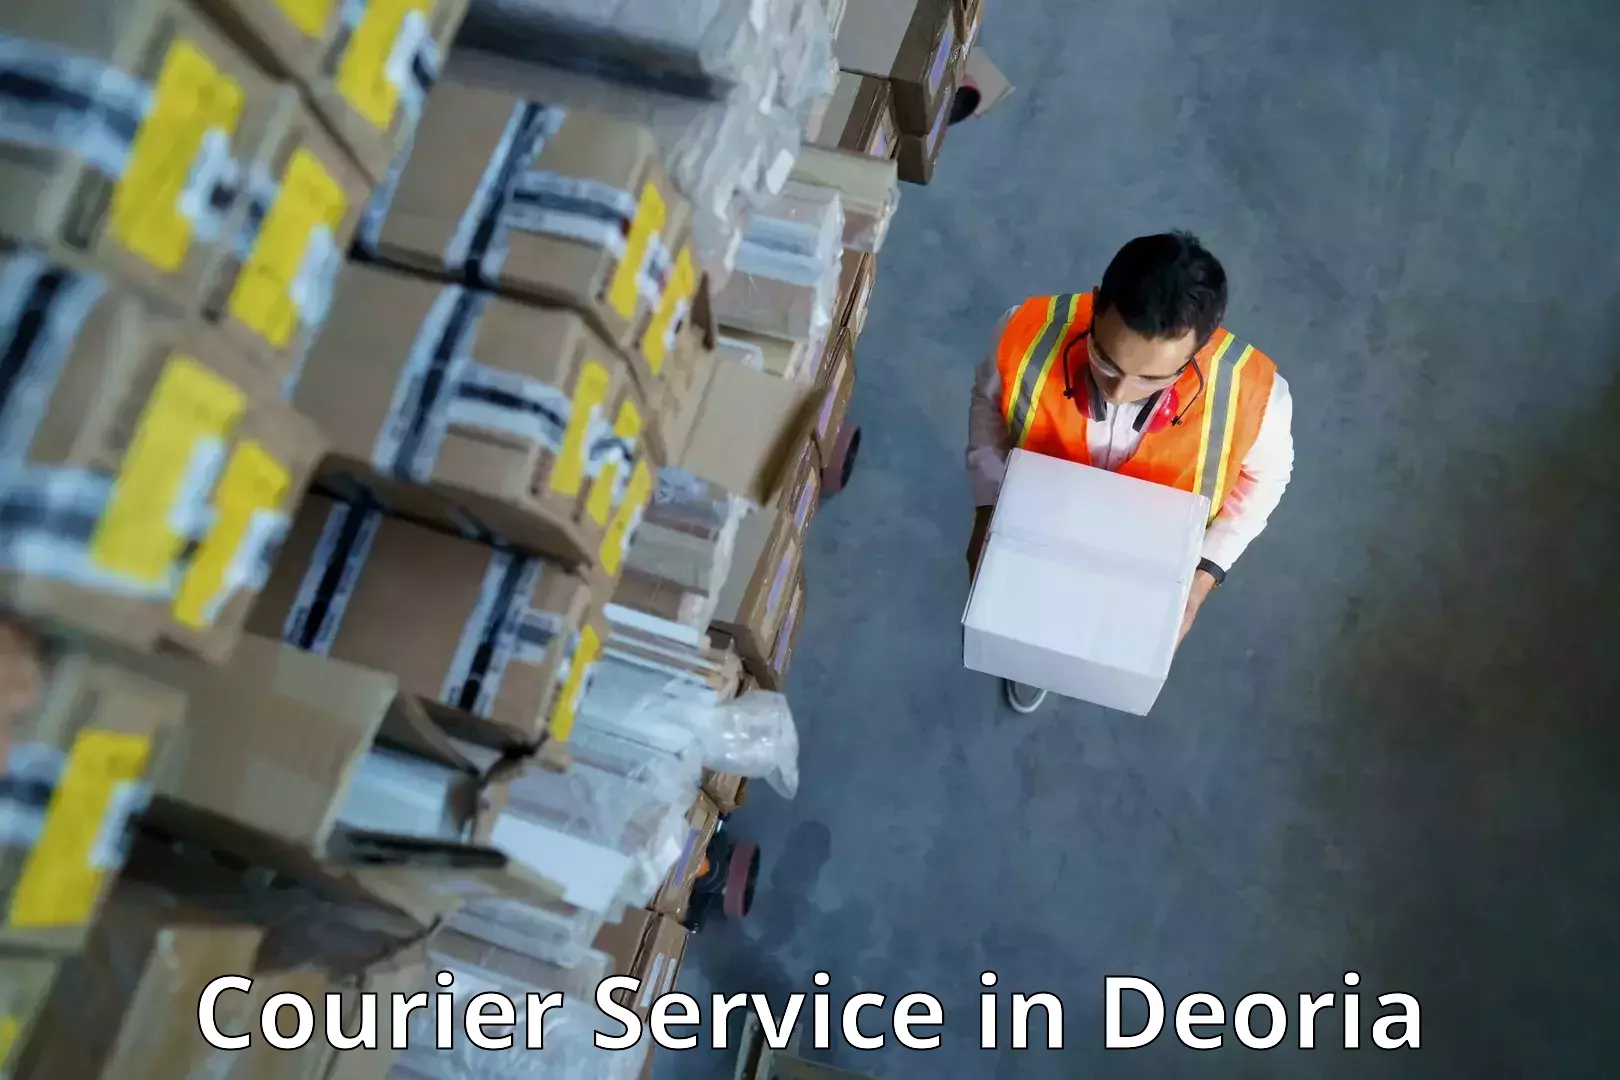 Logistics service provider in Deoria